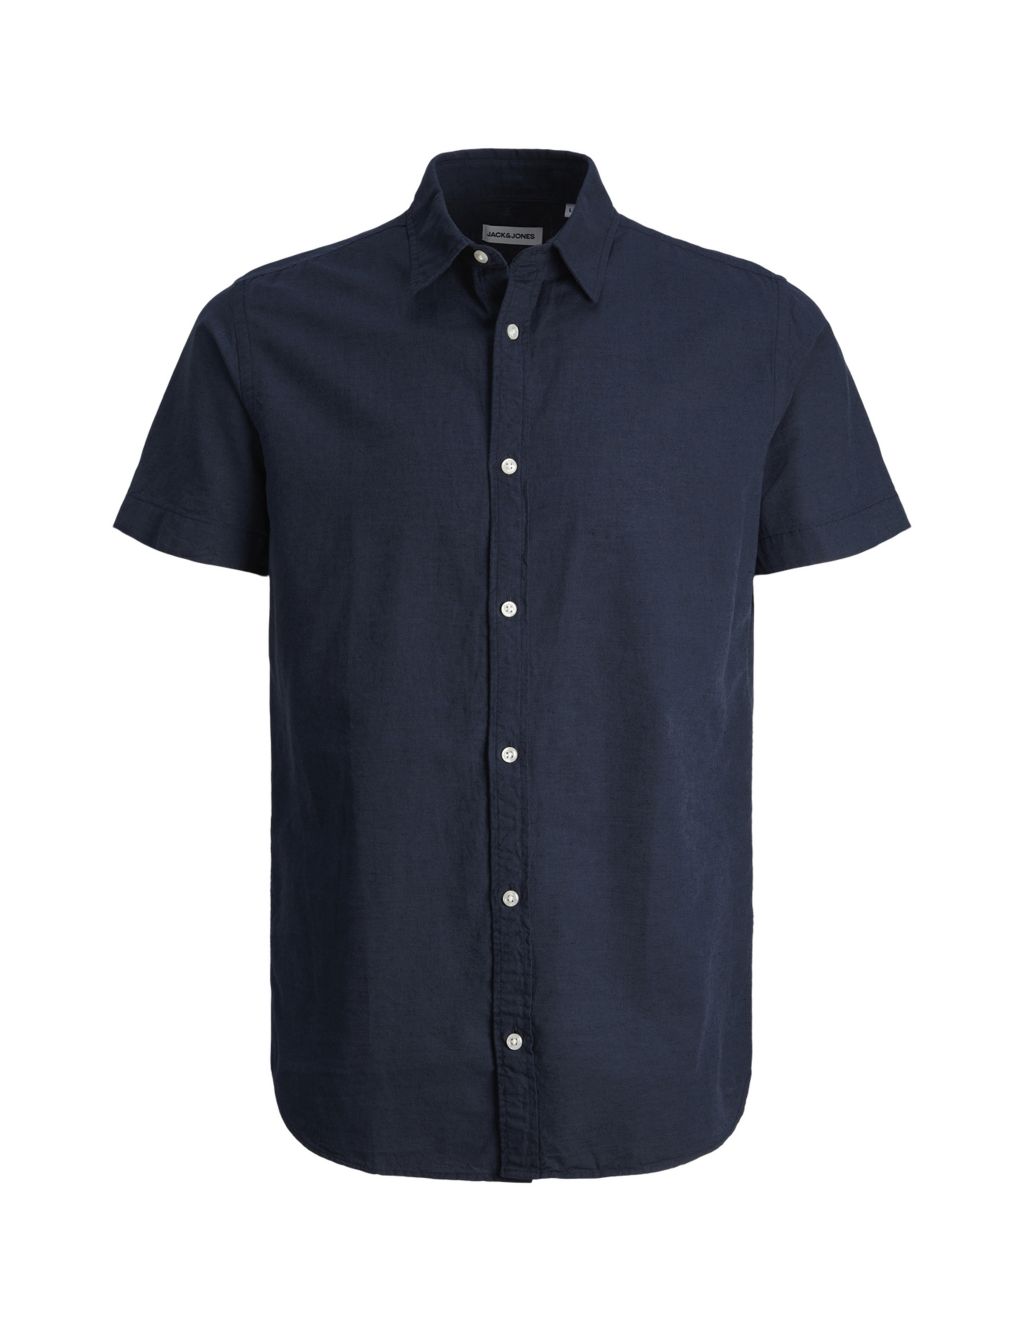 Cotton Linen Blend Oxford Shirt